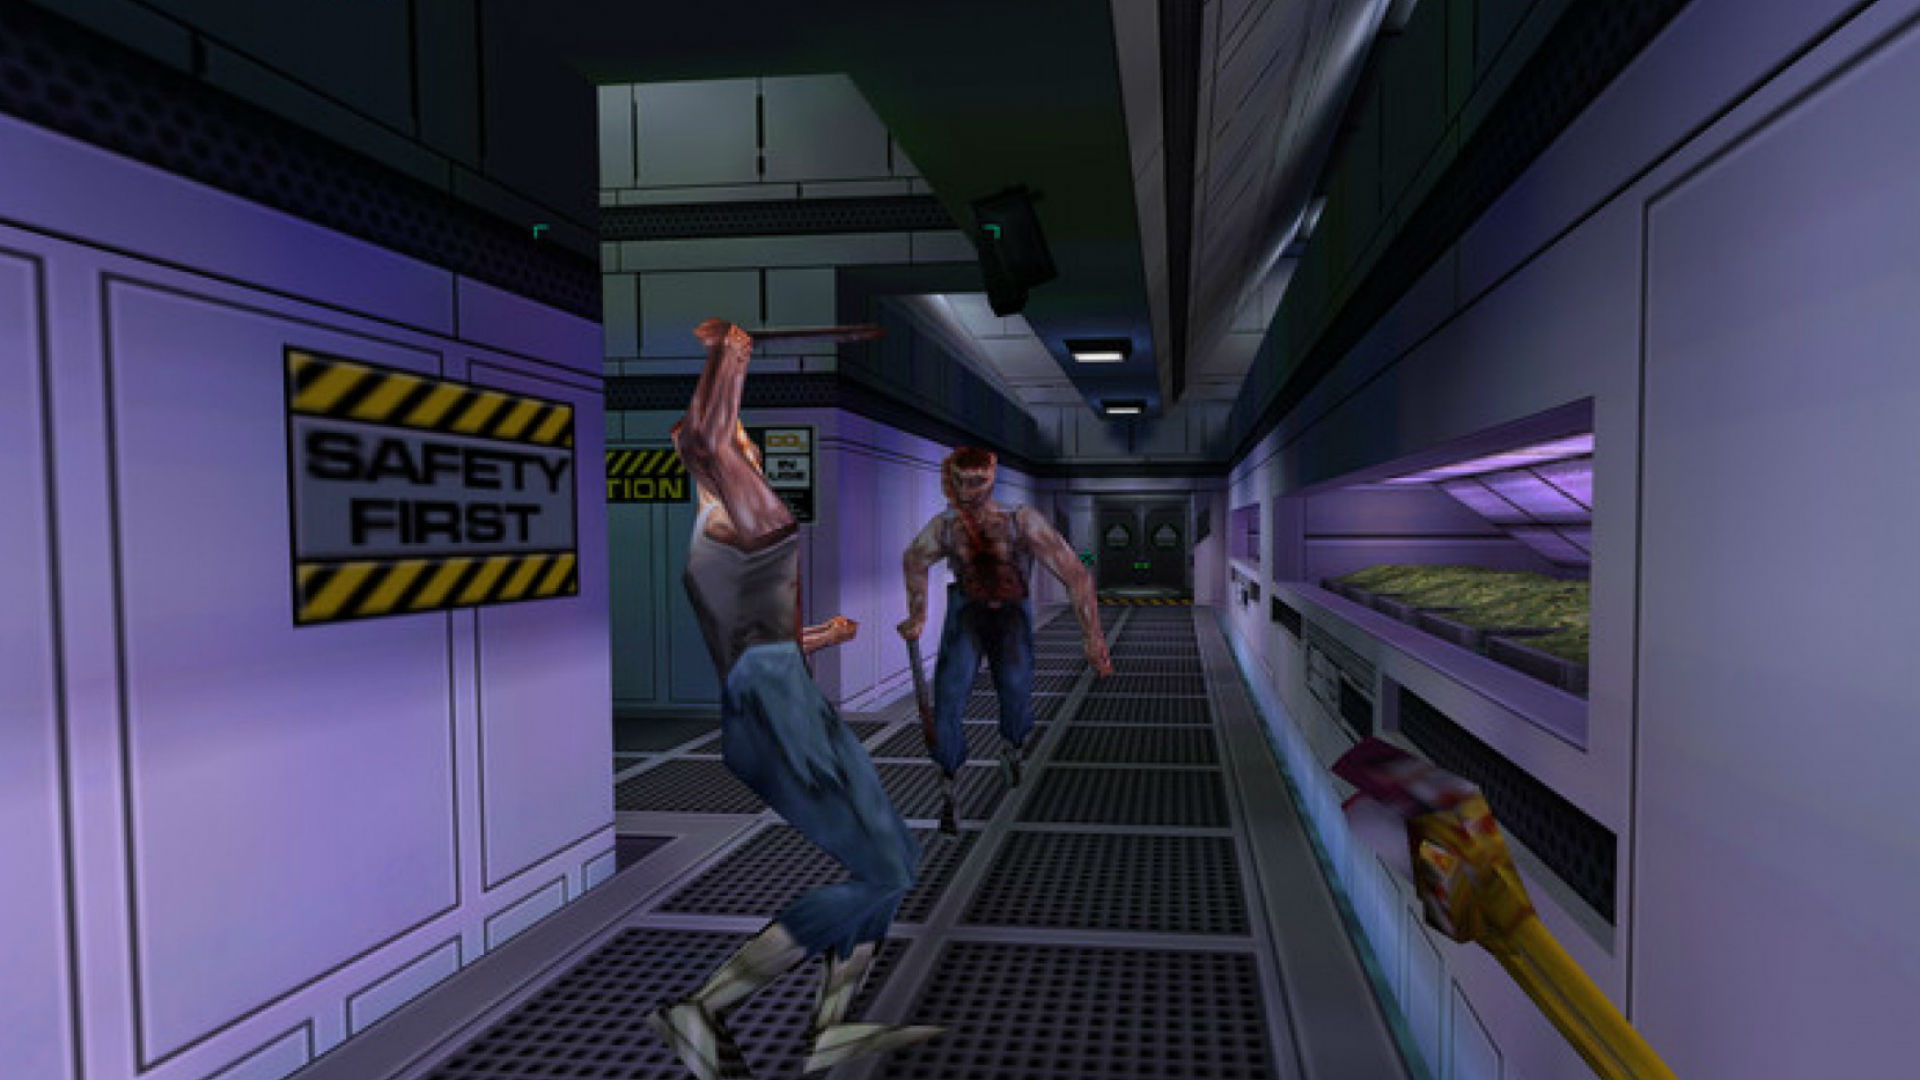 En skænderi i en korridor i System Shock 2, et af de bedste gamle spil. Skiltet på væggen læser